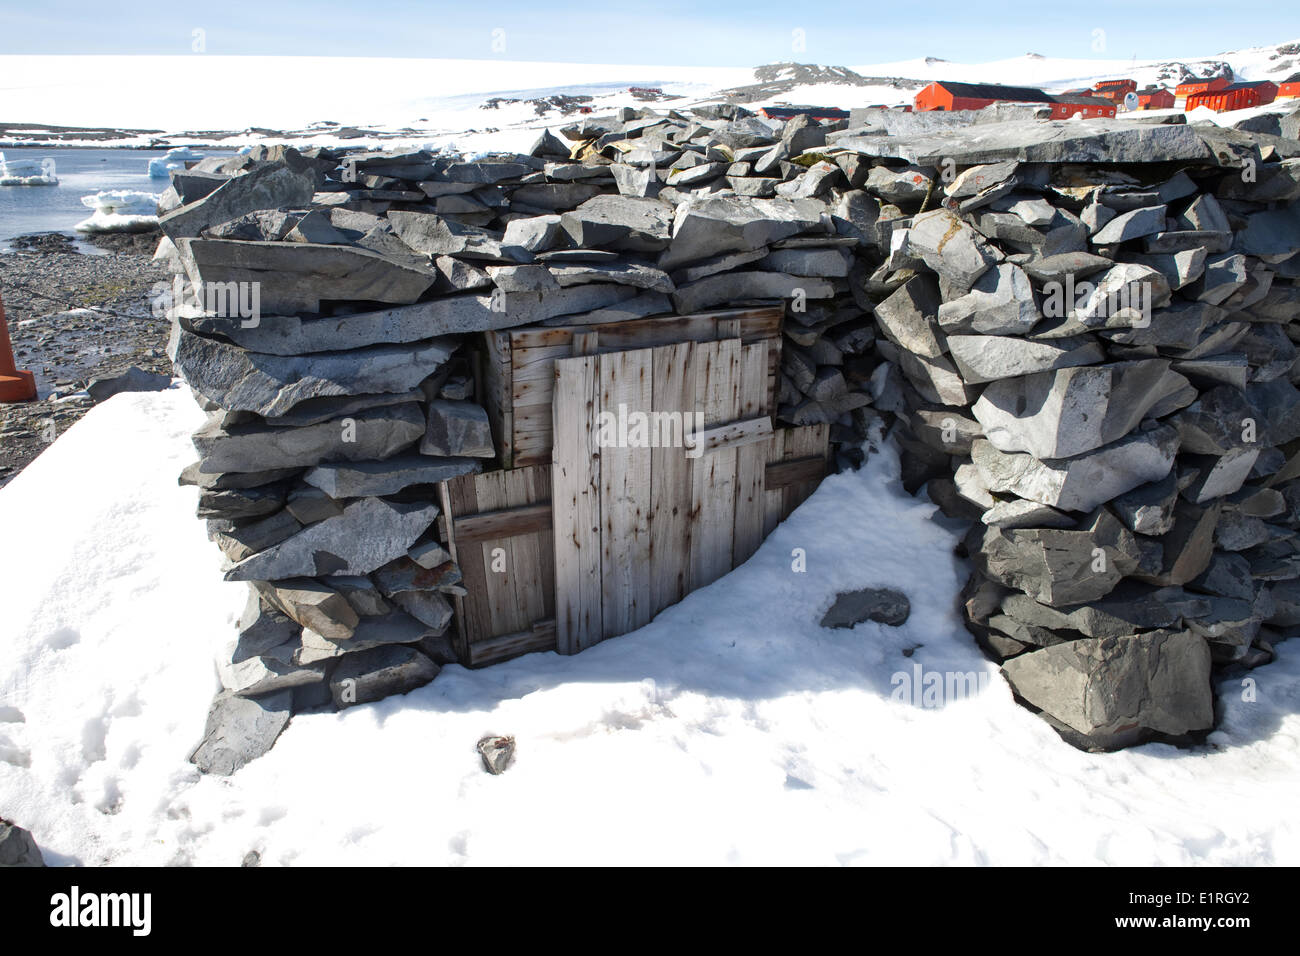 Eingang (Tür) historische Hütte gebaut von 1901-1904 schwedische Antarktis-Expedition in der Antarktis Hope Bay (Bahia Esperanza) Mitgliedern. Stockfoto